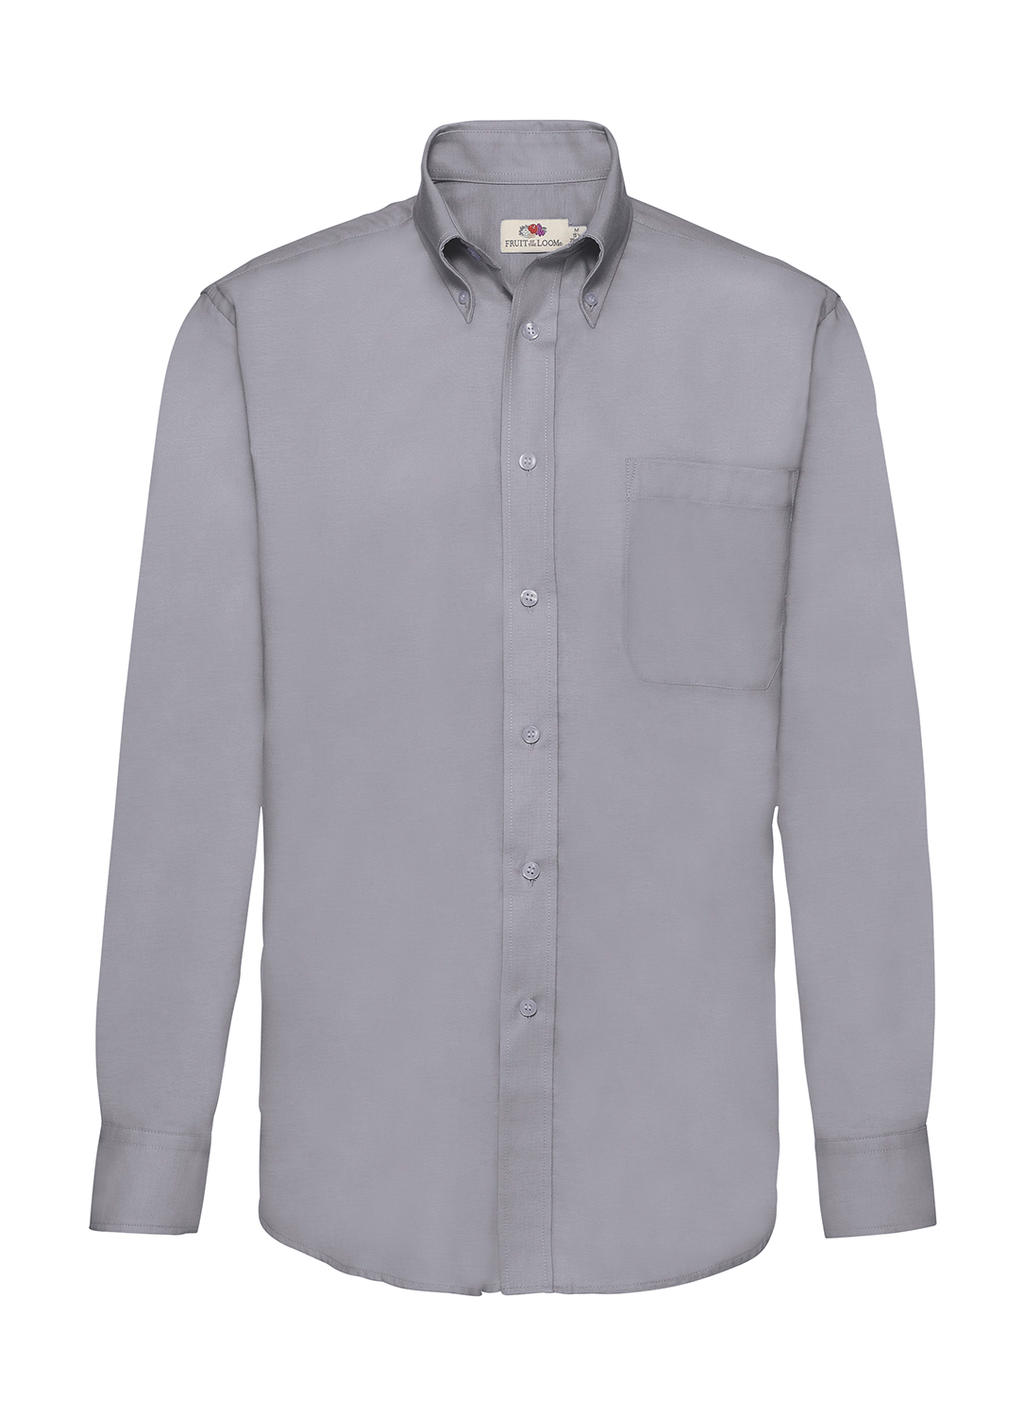 Pánska košeľa Oxford s dlhými rukávmi - oxford grey